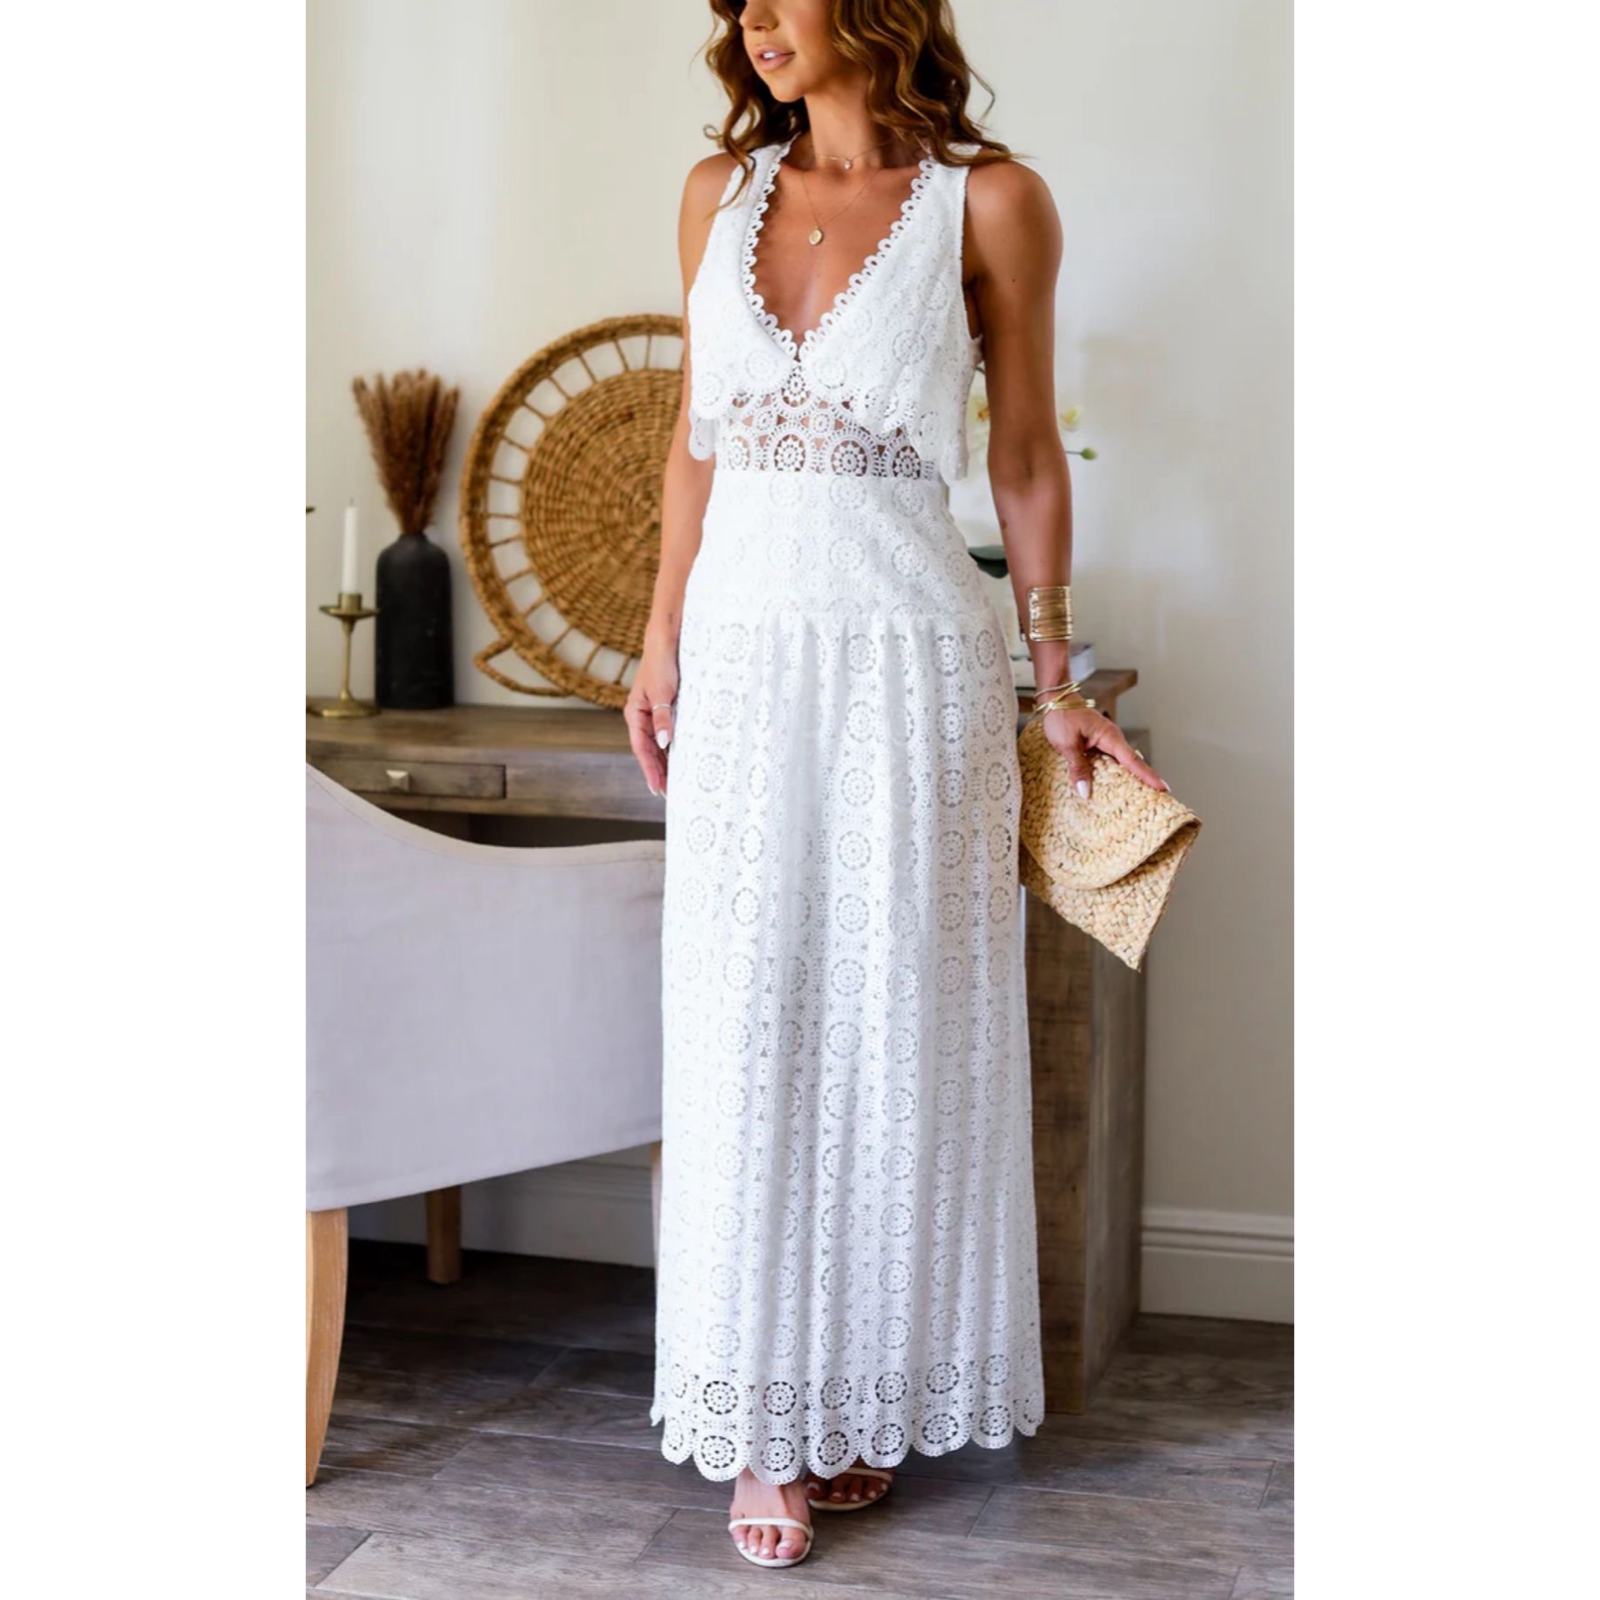 Lala white dress